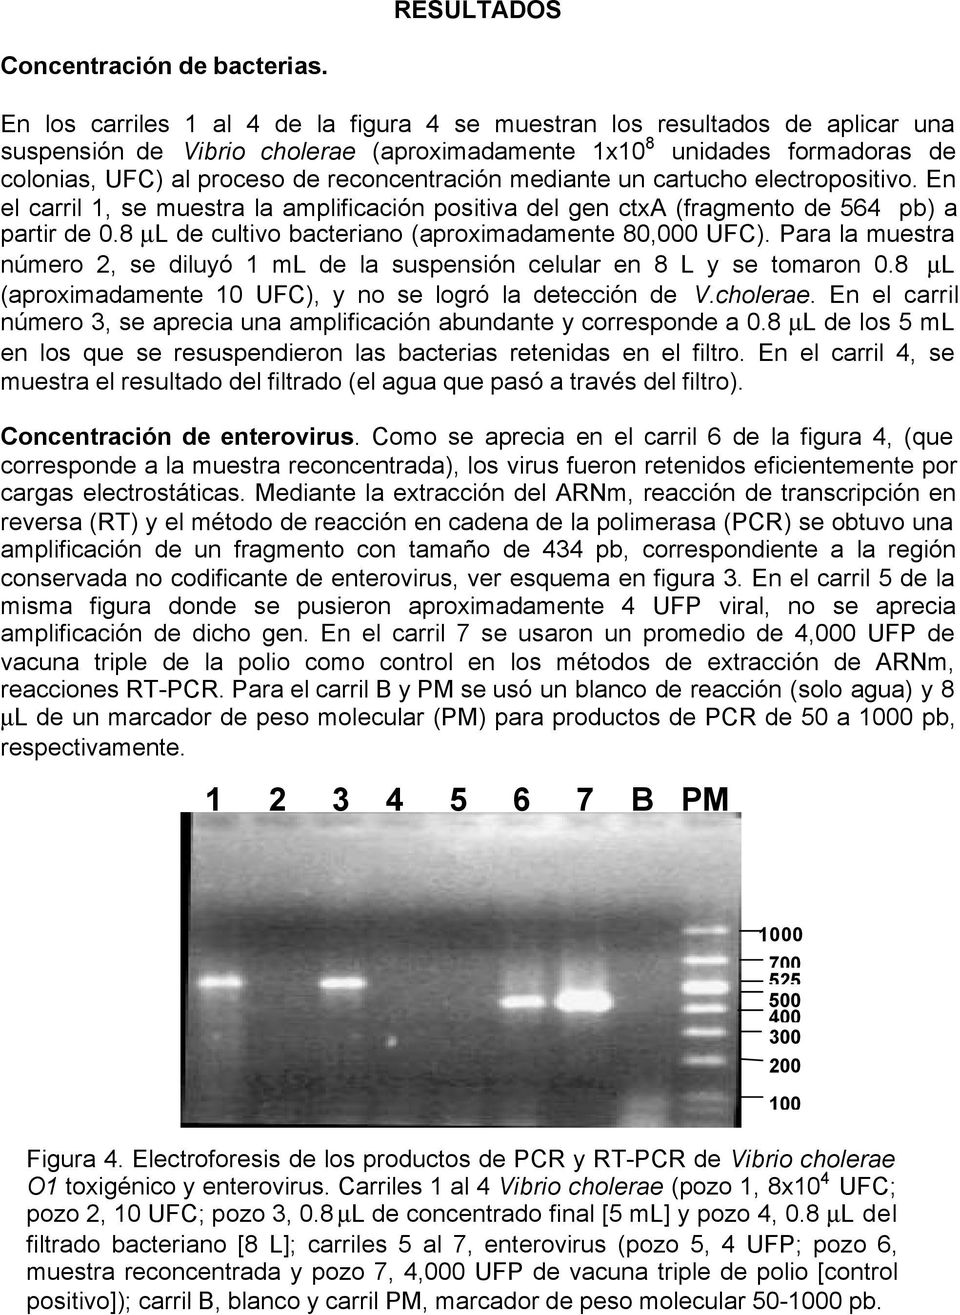 reconcentración mediante un cartucho electropositivo. En el carril 1, se muestra la amplificación positiva del gen ctxa (fragmento de 564 pb) a partir de 0.